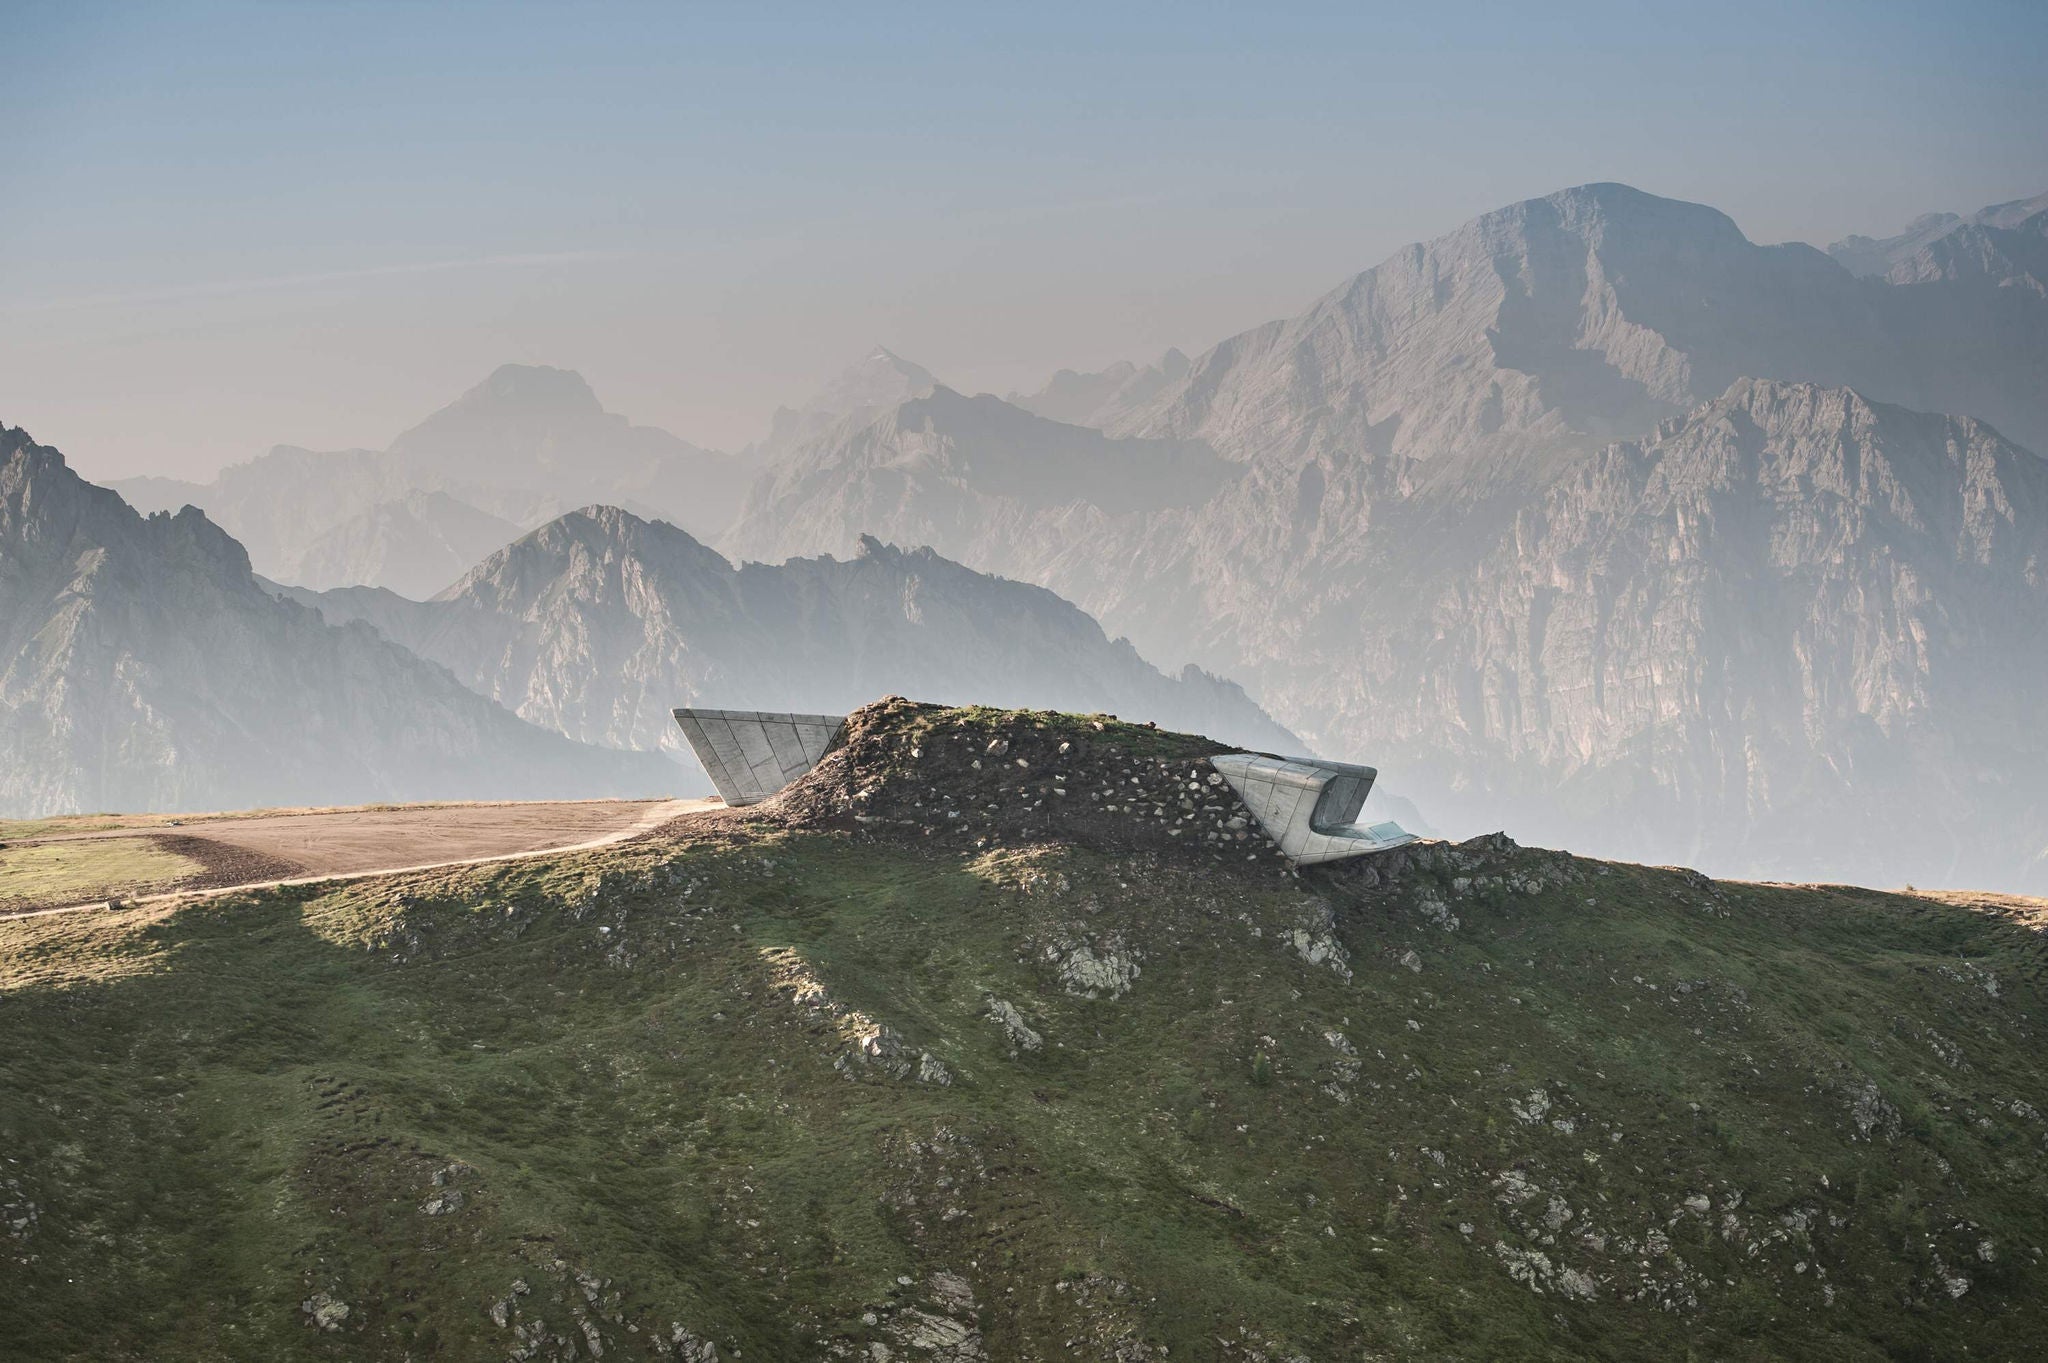 Die futuristische Architektur des Messner Mountain Museusm Corones spielt mit modernen Formen und der Bergkulisse des Kronplatzes